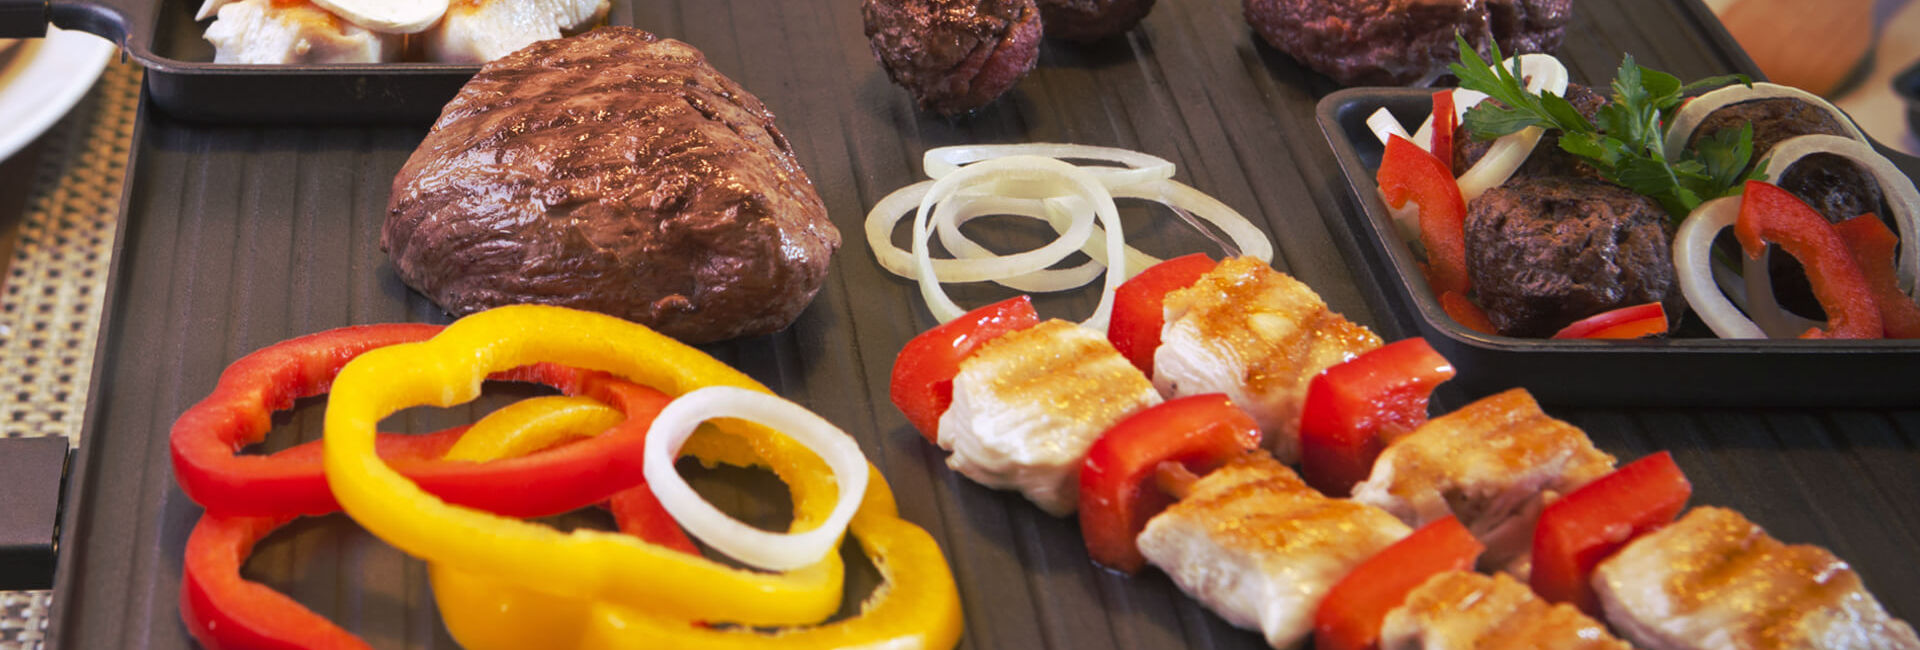 Gourmet plaat met vlees, ui en paprika als onderdeel van de Grill-Proeverij Combinatie